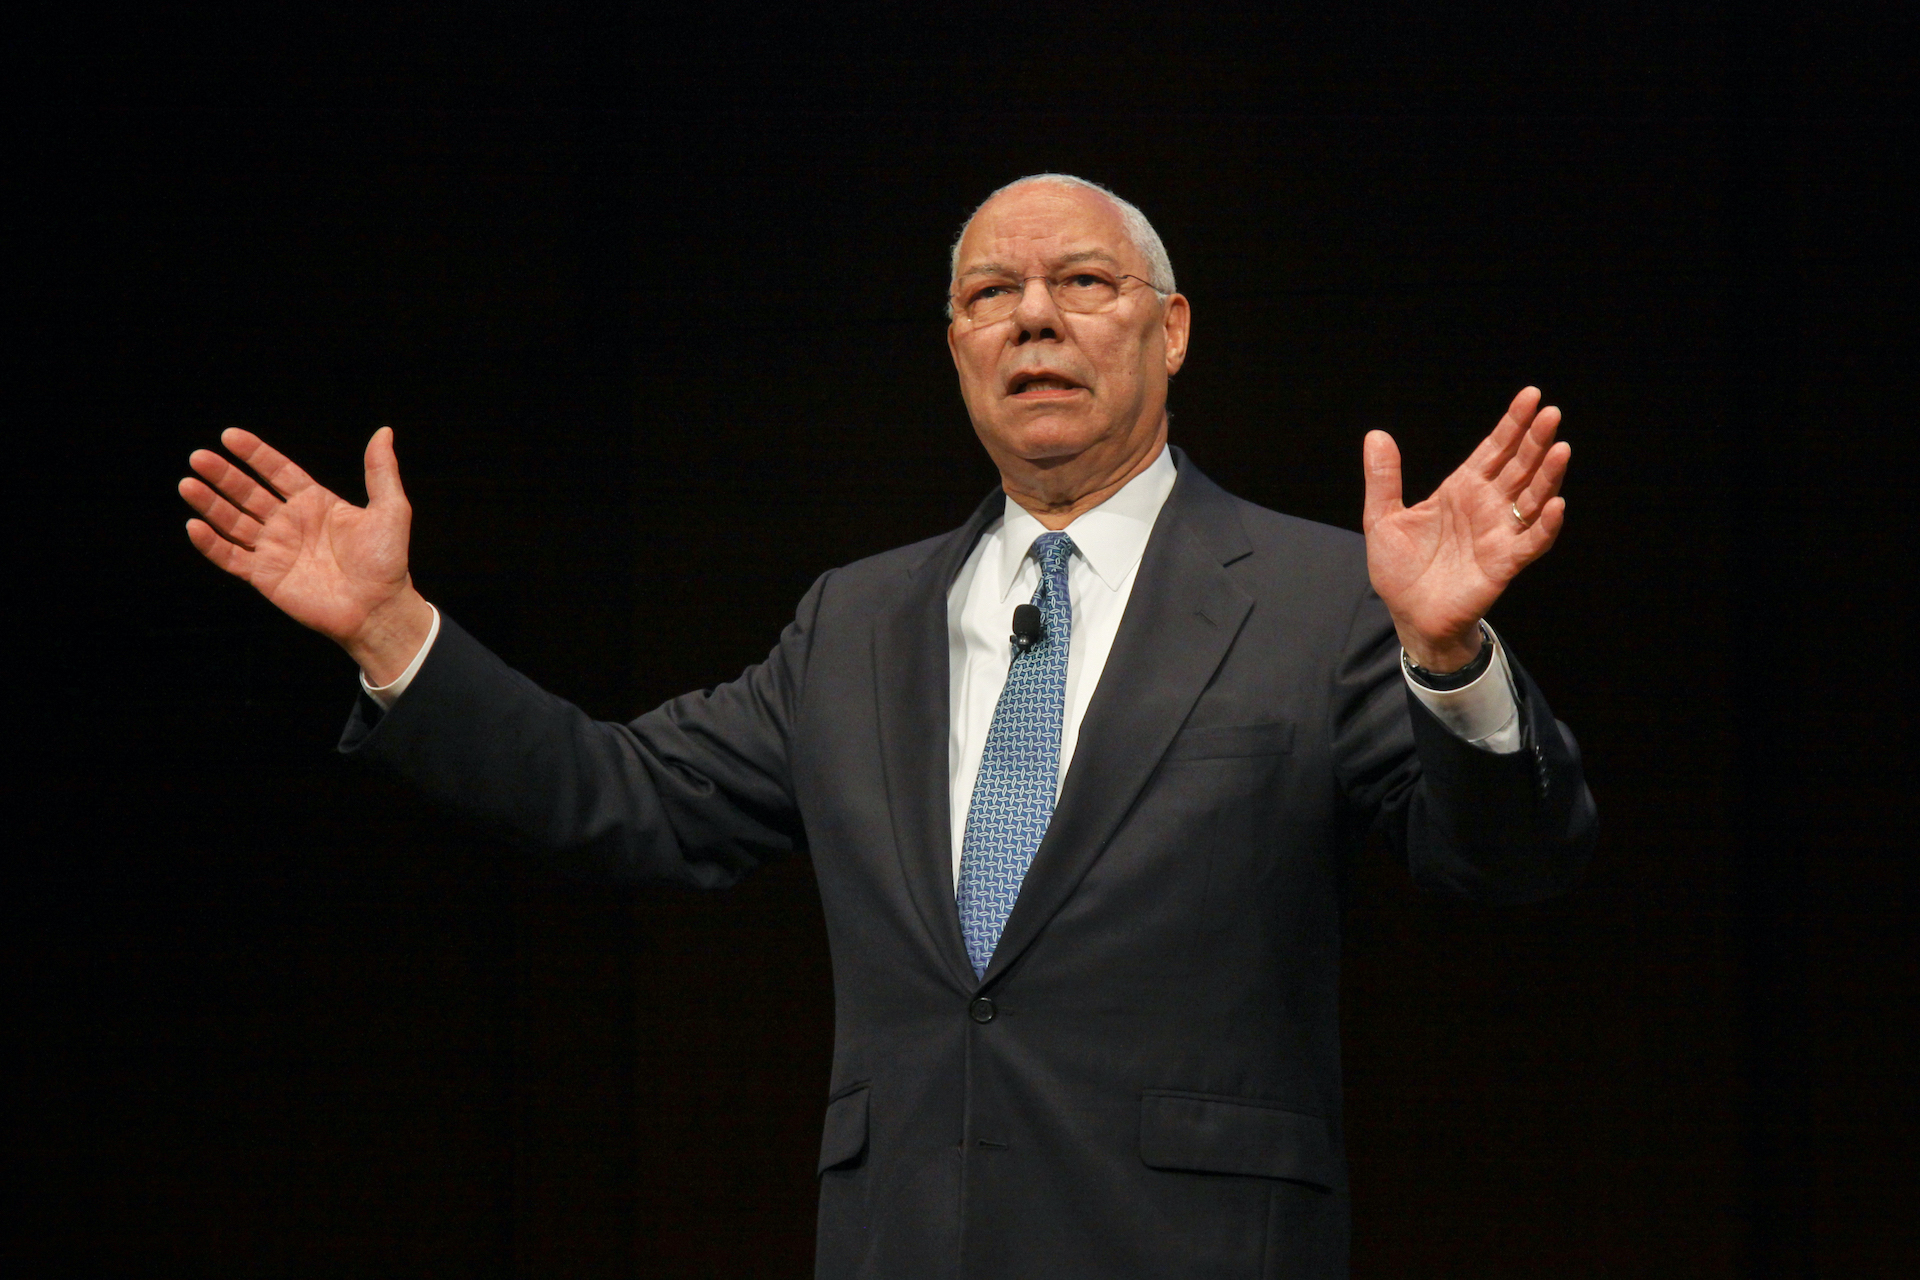 General Colin Powell Keynote Speech